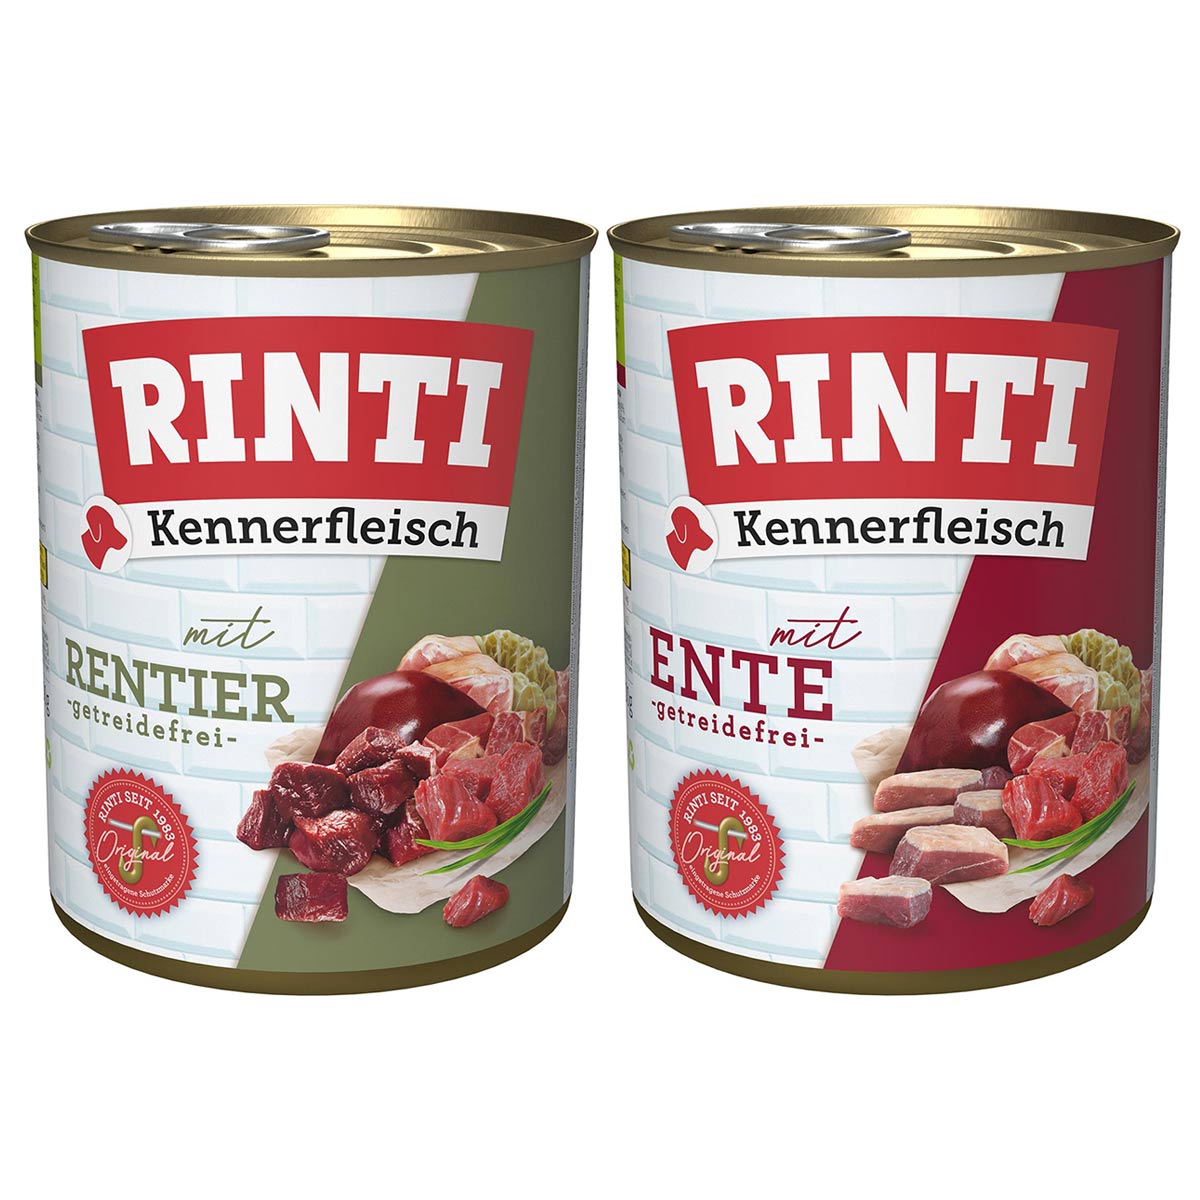 Rinti Kennerfleisch Mixpaket mit Ente und Rentier 24x800g von Rinti